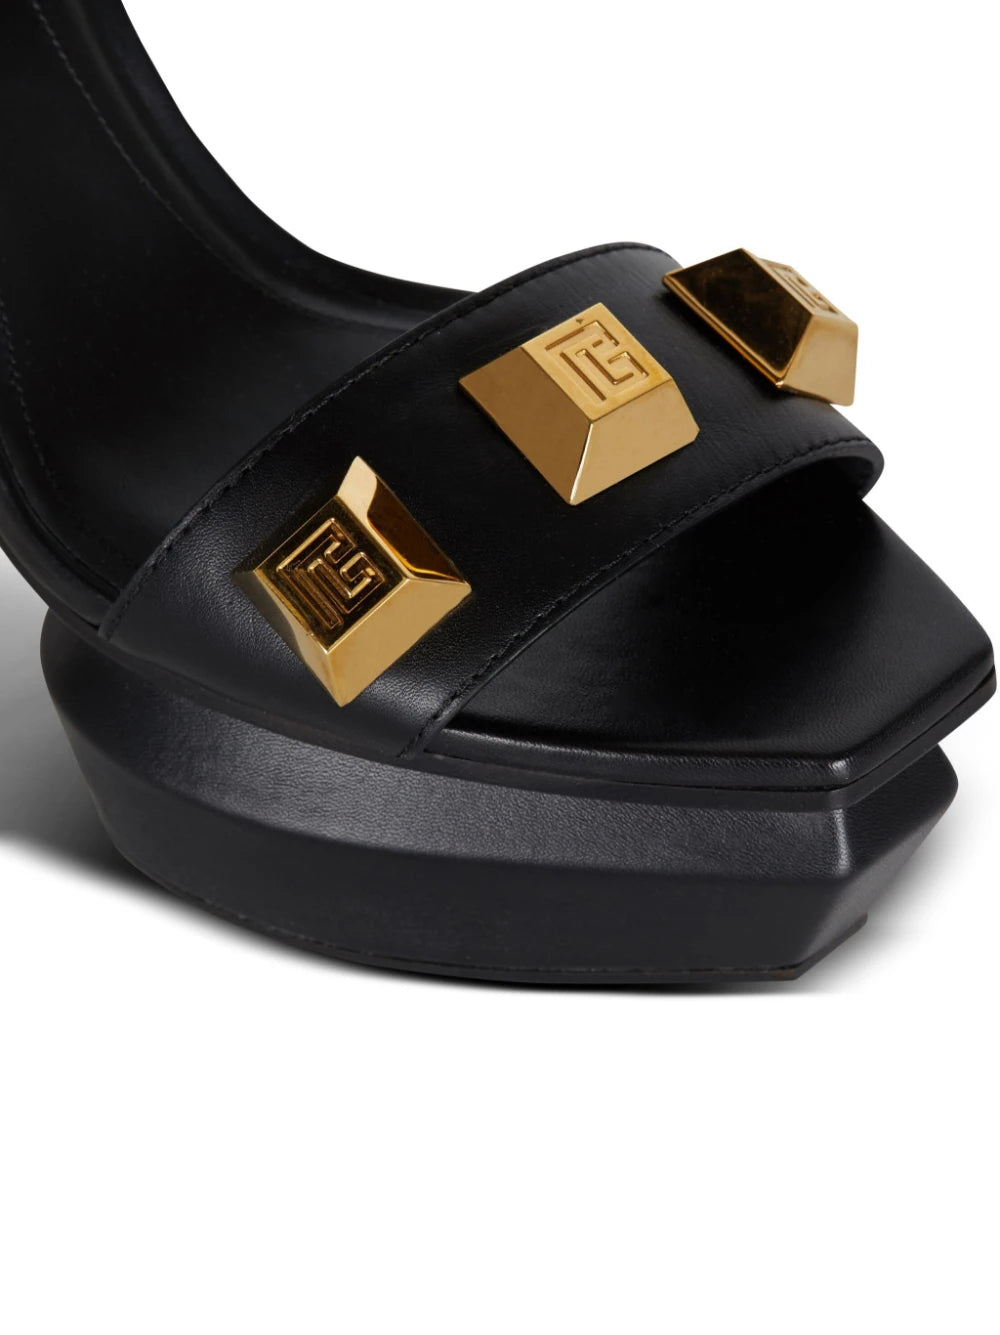 BALMAIN WOMEN Platform Sandals AVA Calfskin/Studs Black/Gold - MAISONDEFASHION.COM